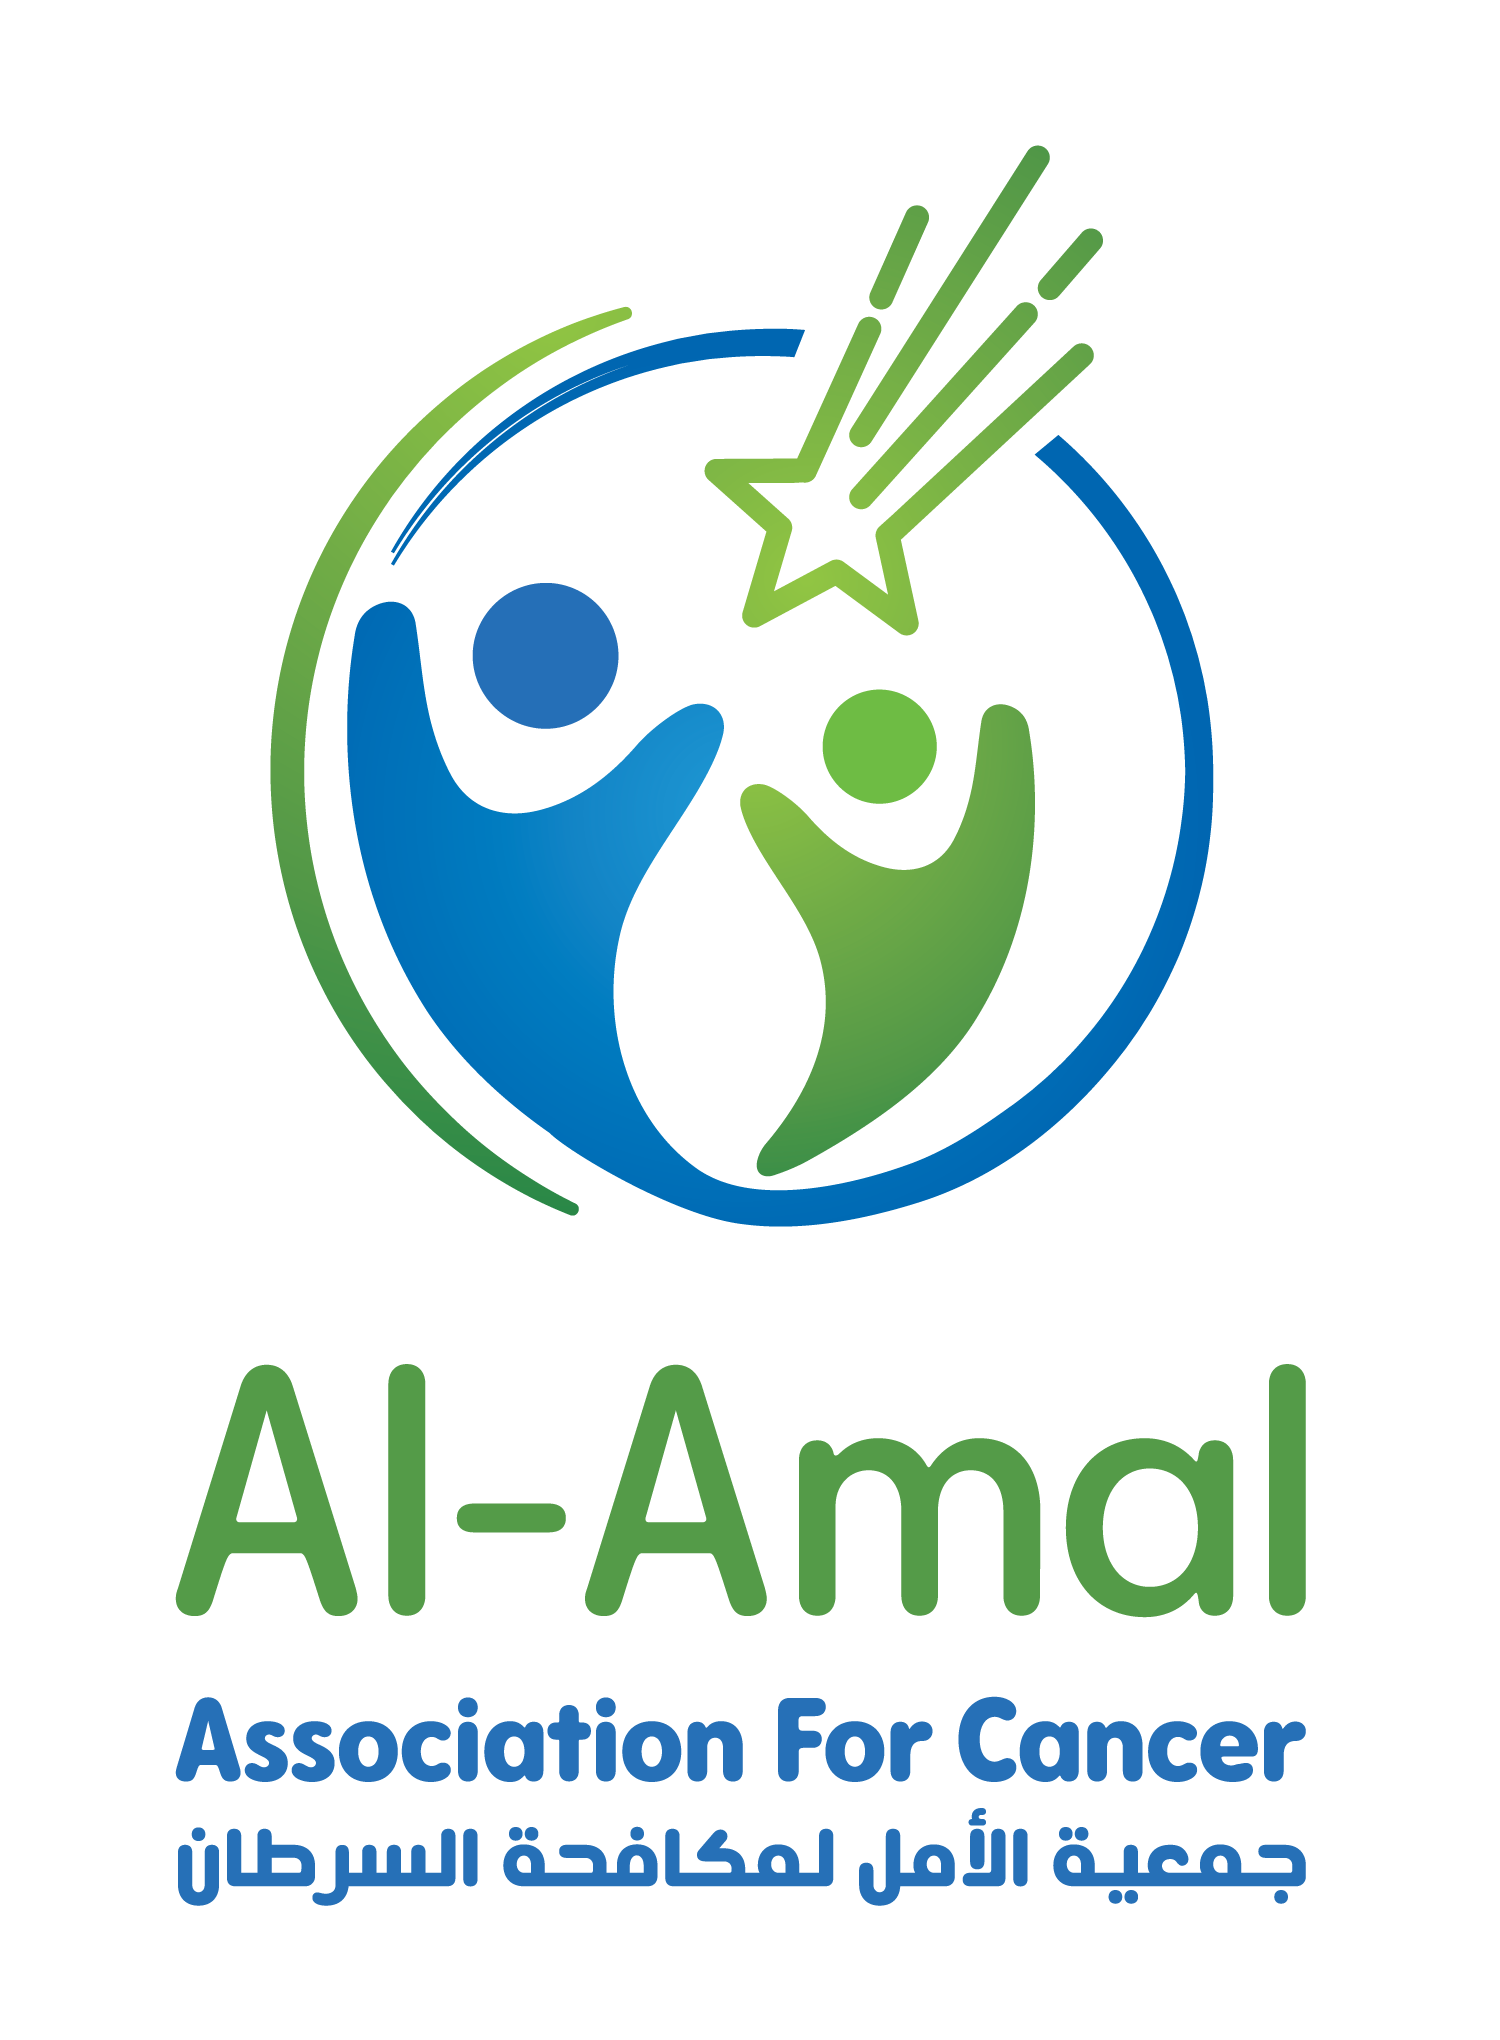 Al Amal Association for Cancer